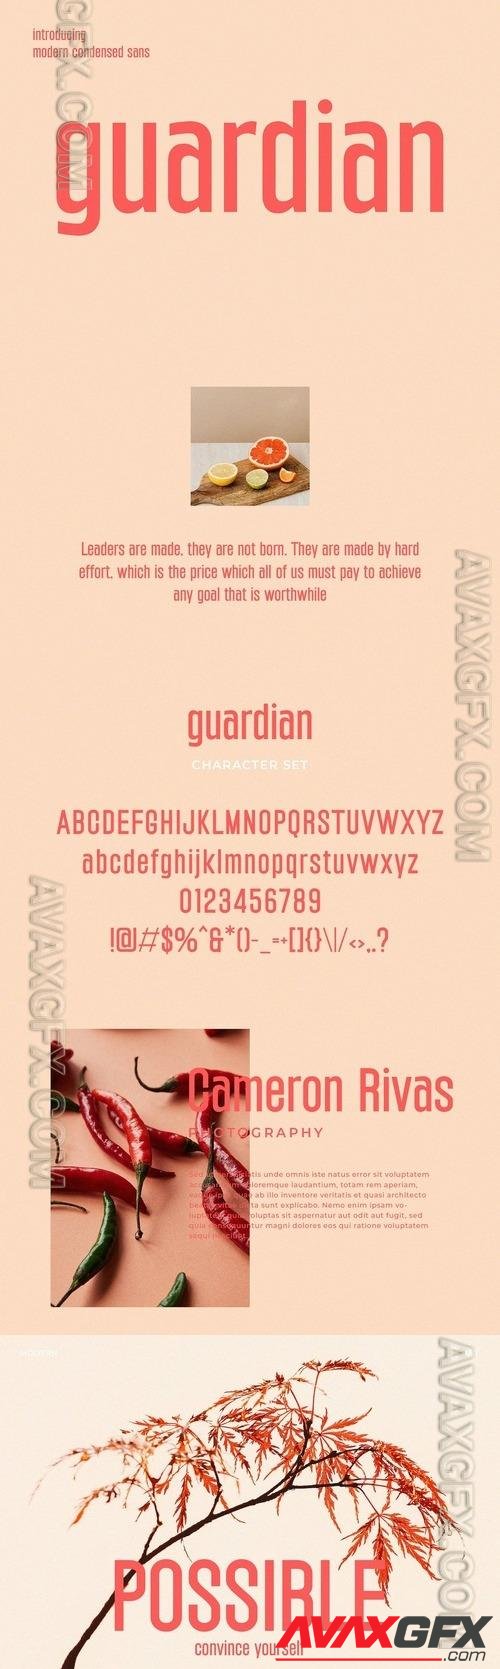 Guardian - Modern Condensed Sans Font